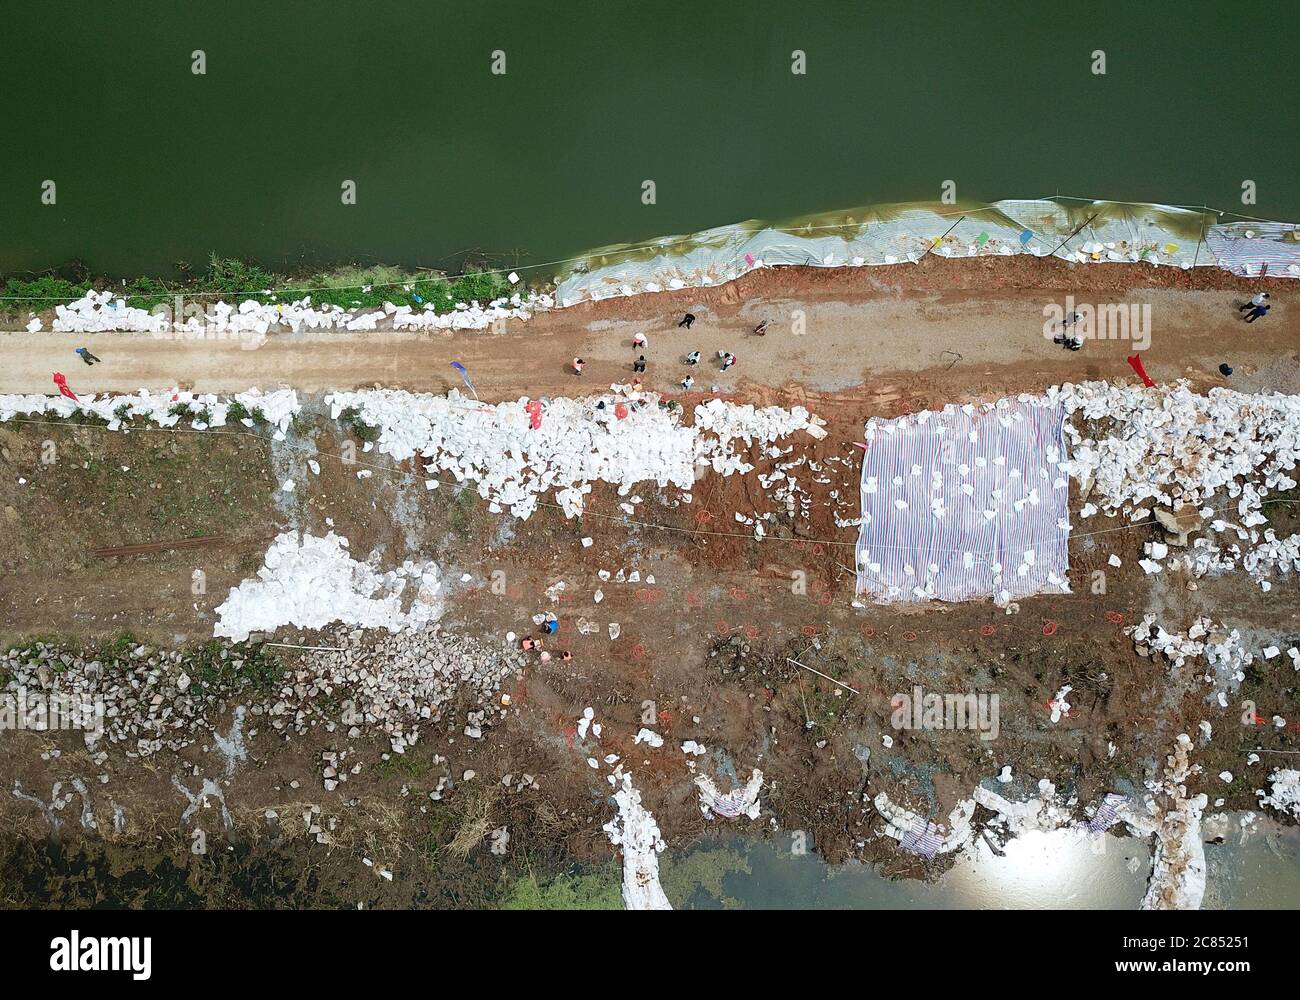 (200721) -- JIUJIANG, 21 luglio 2020 (Xinhua) -- Foto aerea scattata il 21 luglio 2020 mostra ricercatori dell'Università della Cina orientale della tecnologia che hanno istituito un sistema di imaging resistivo 3D sulla diga interna del fiume Furong nella città di Furongdun di Jiujiang, nella provincia di Jiangxi, nella Cina orientale. La diga interna del fiume Furong ha visto continui problemi di tubatura a causa di un gran numero di nidi di formiche in esso, che rappresentano una grave minaccia per la sicurezza dei residenti locali. Credit: Xinhua/Alamy Live News Foto Stock